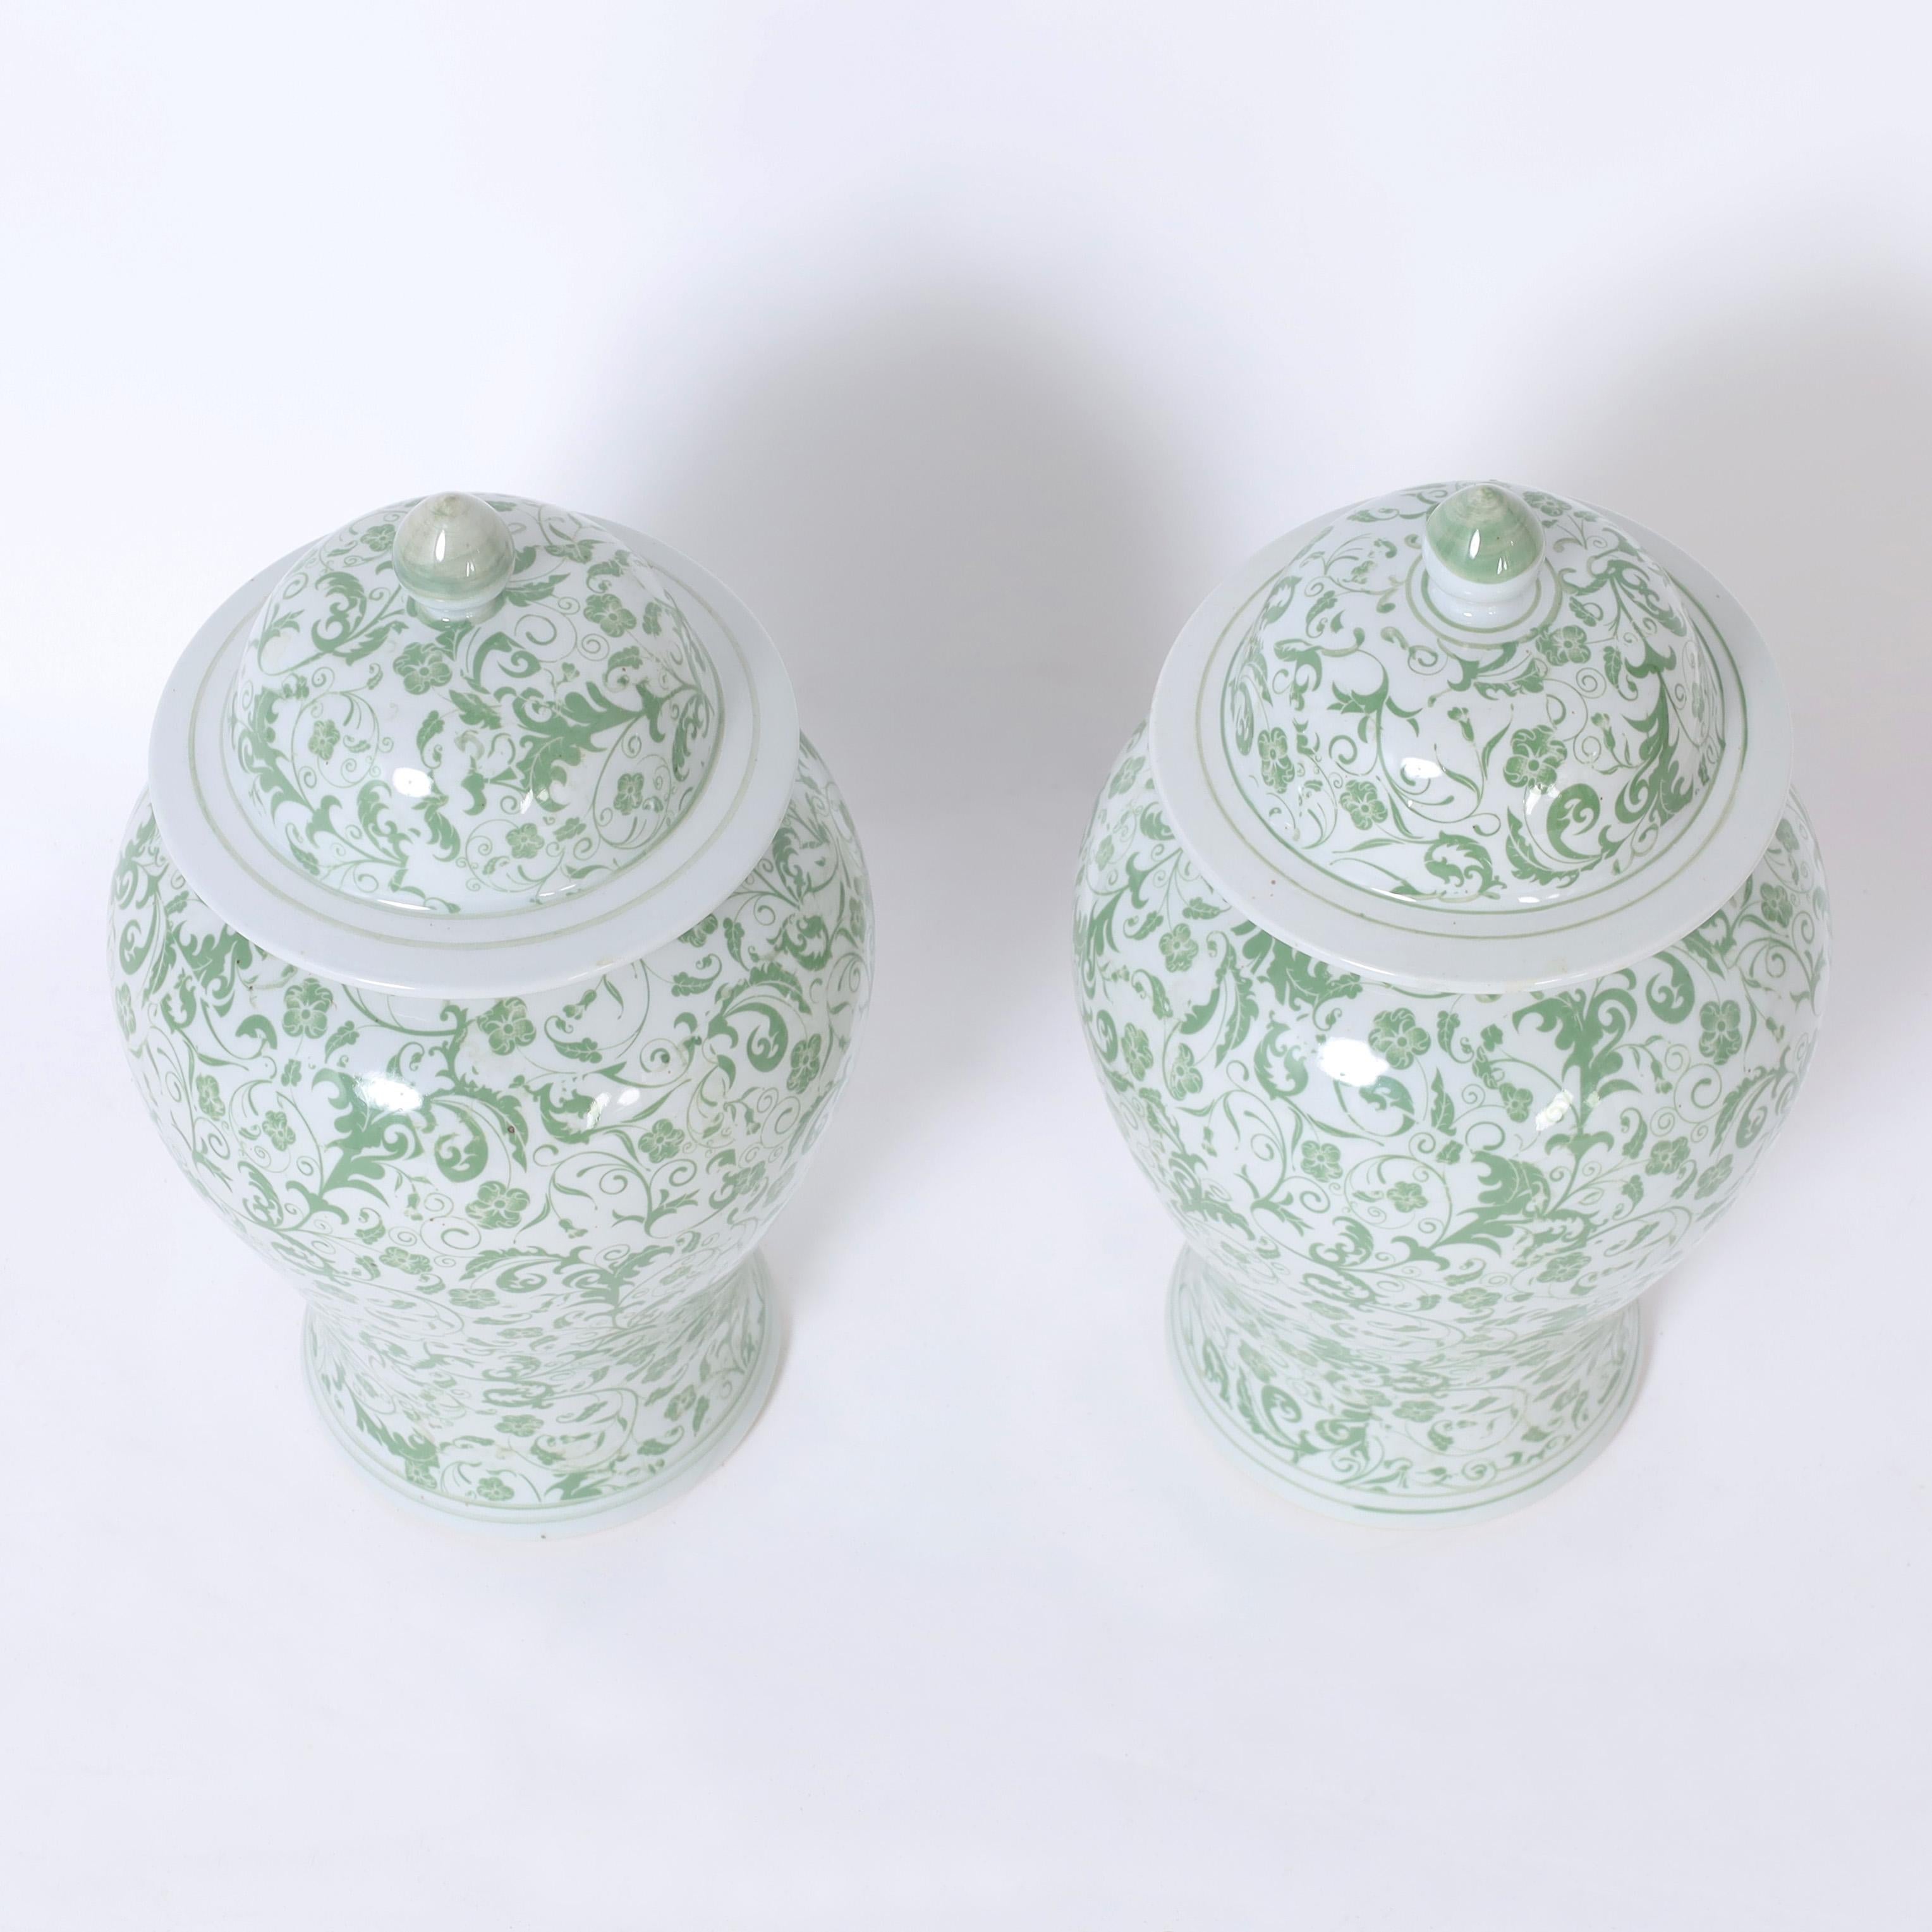 Ein Paar chinesische Ingwerdosen aus Porzellan, handgefertigt in klassischer Form und von Hand mit reizvollen grünen und weißen Blumenmustern verziert.